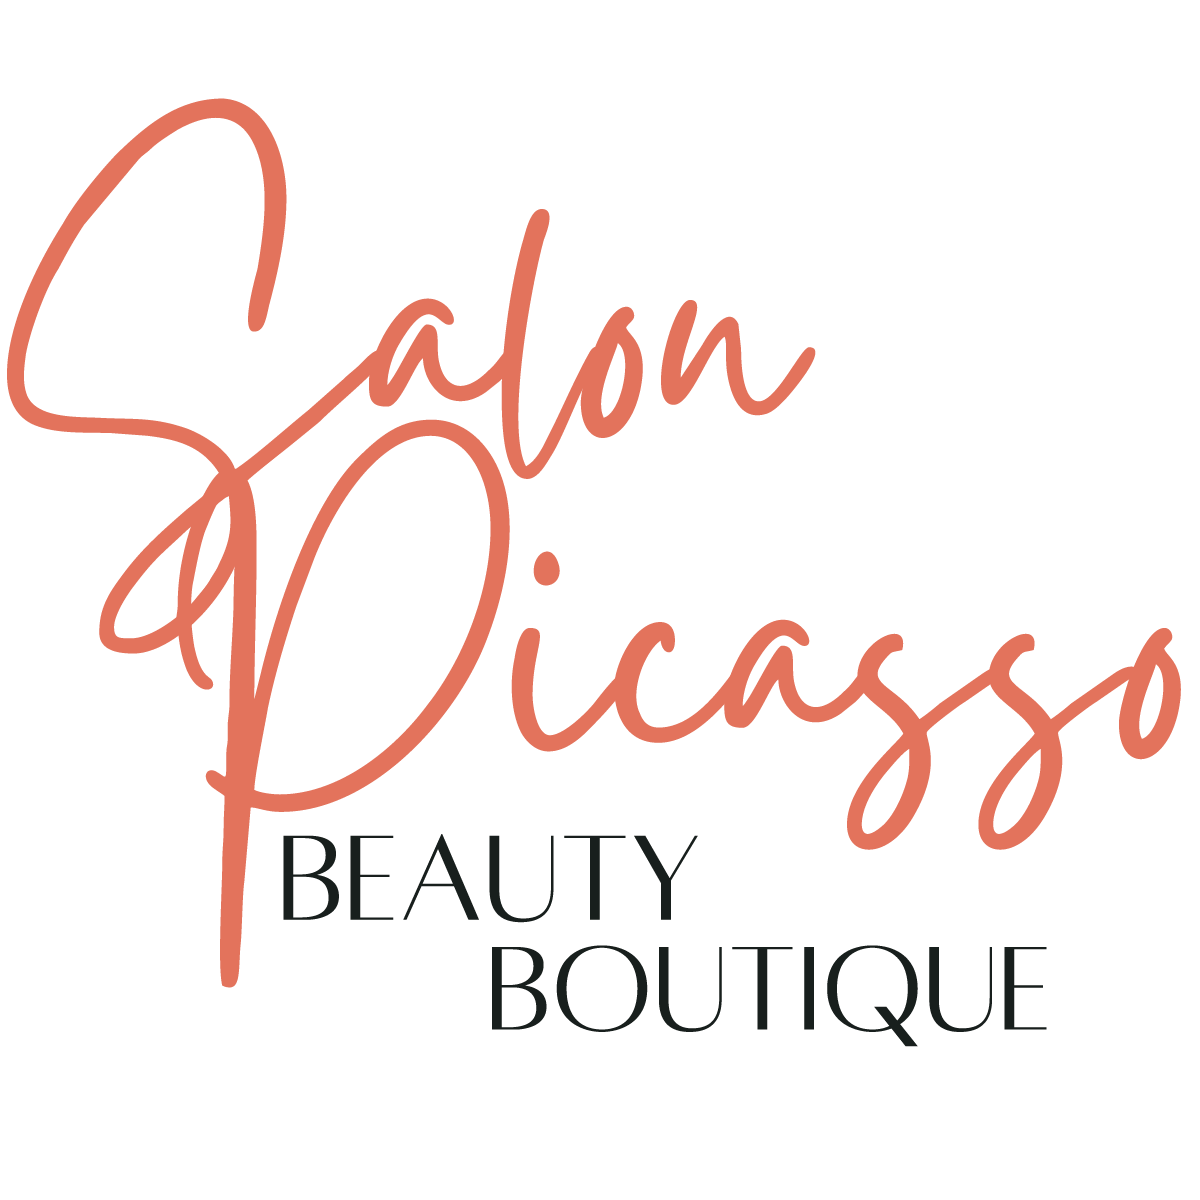 Salon Picasso